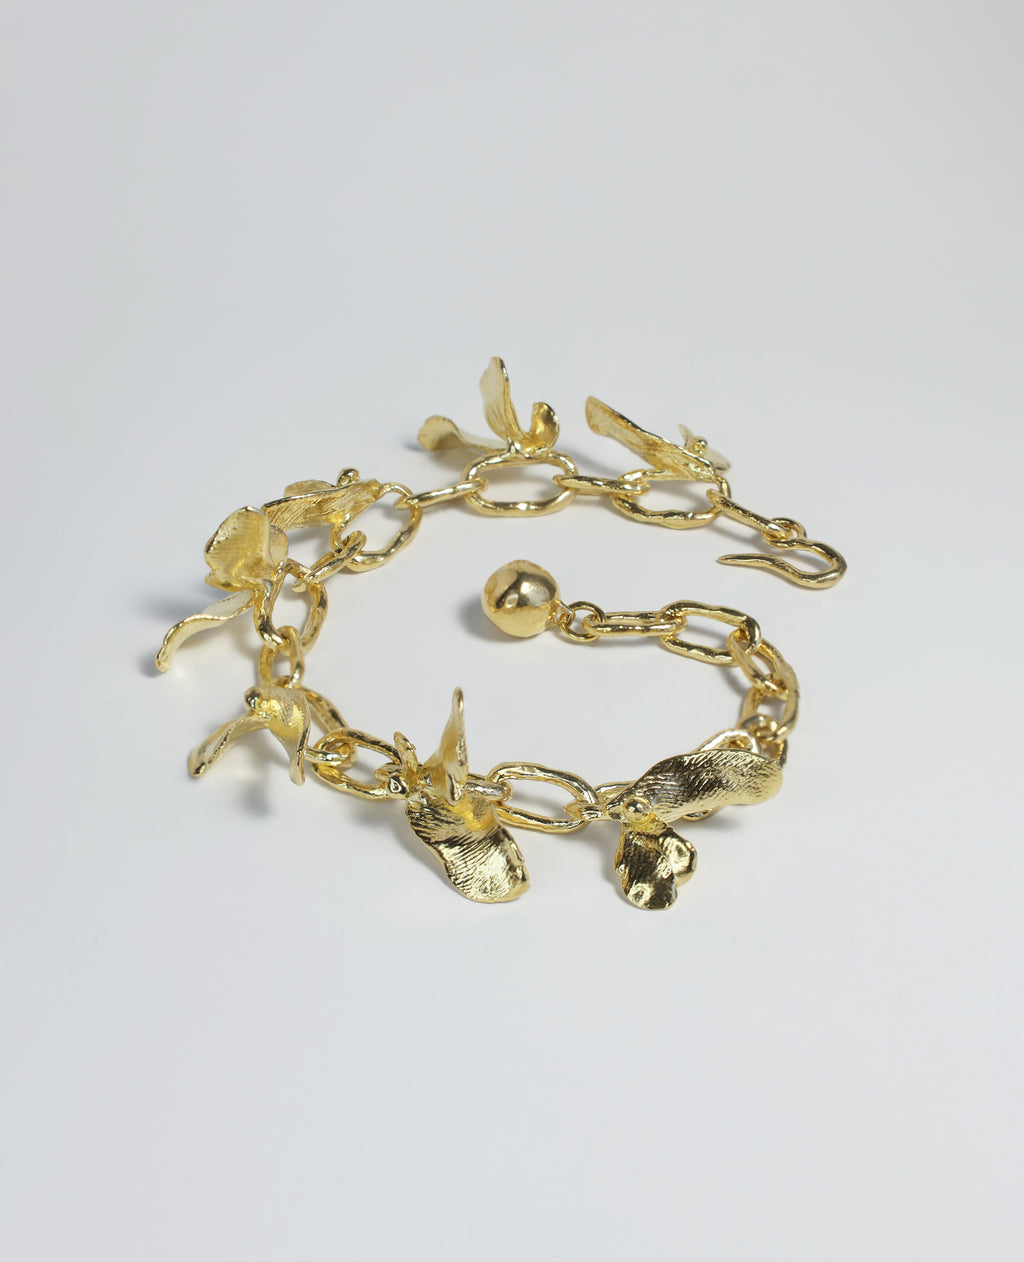 ARMLET FLORALIS // bracelet doré - bijoux ORA-C - bijoux faits à la main par Caroline Pham, designer indépendante basée à Montréal